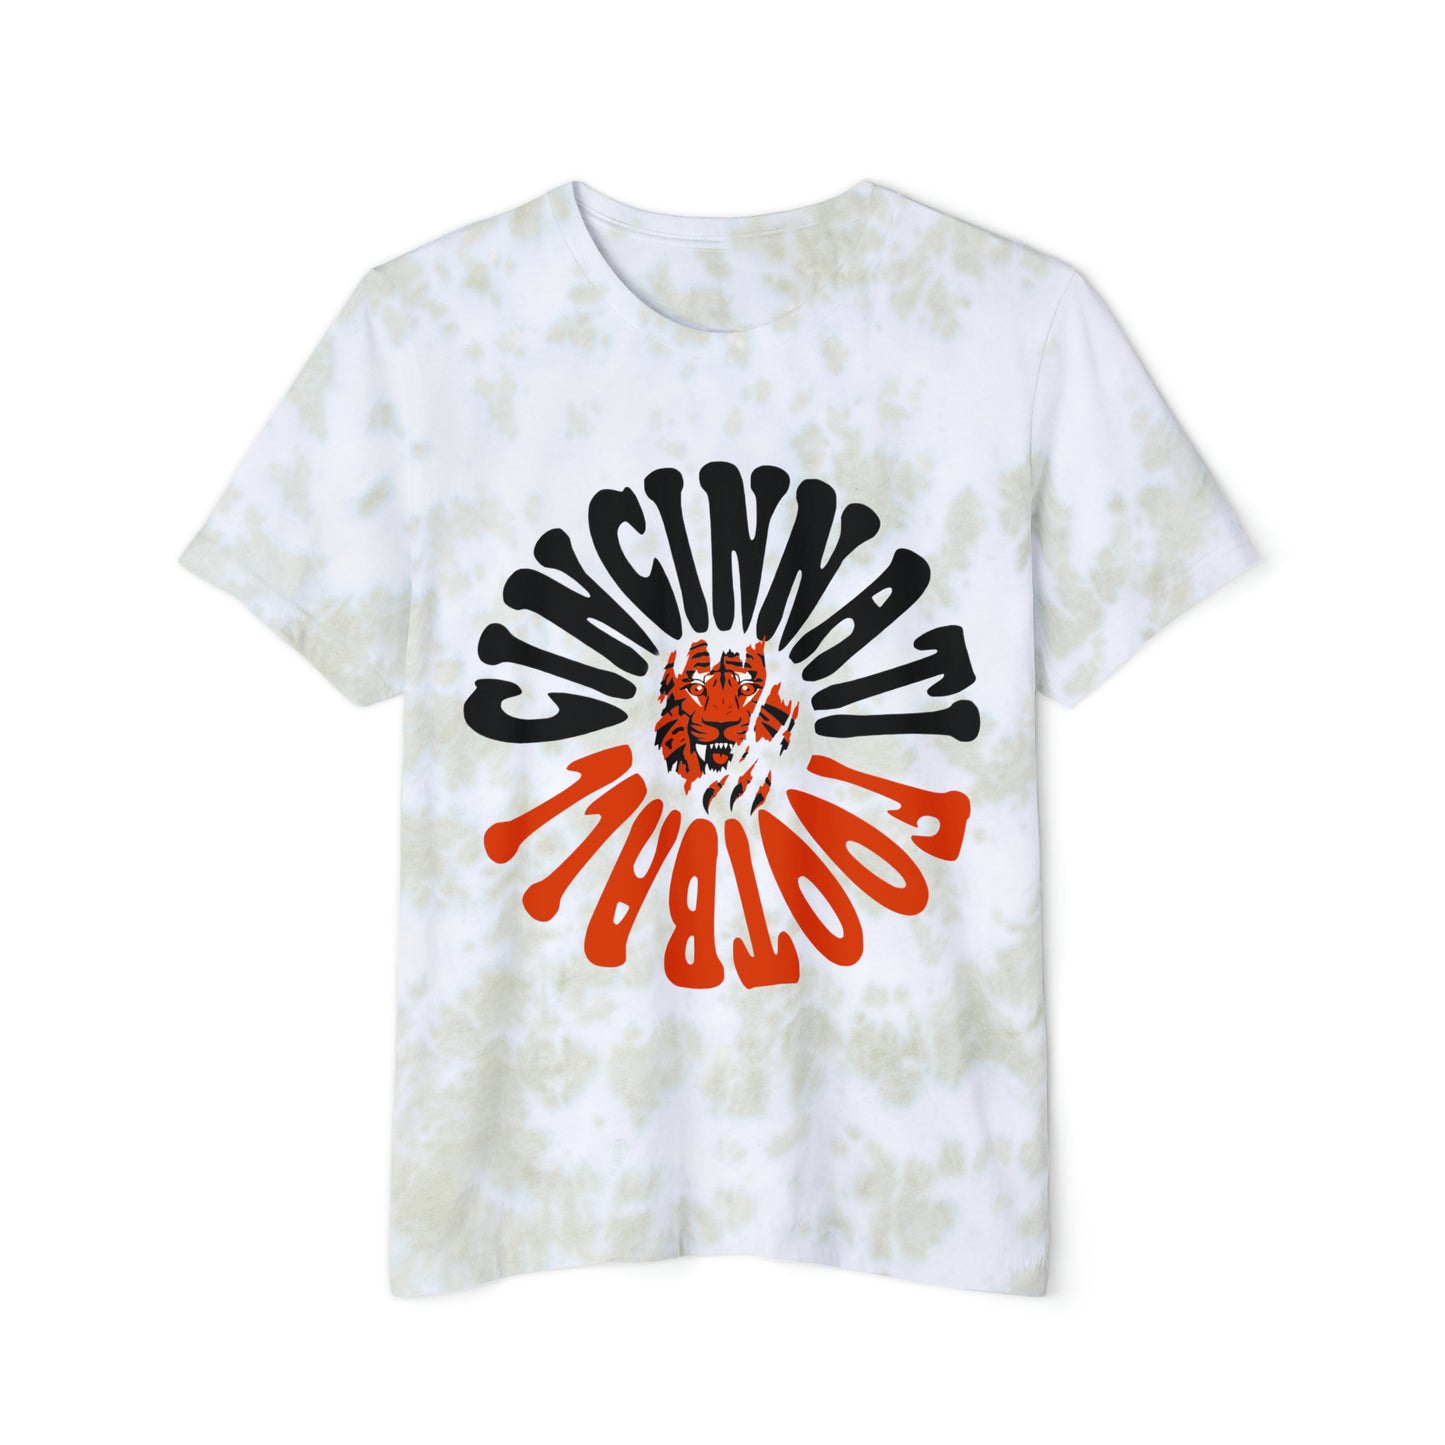 Tie Dye Cincinnati Bengals T-Shirt - Hippy Vintage Joe Burrow Acid Wash Oversized Men's & Women's - Design 2